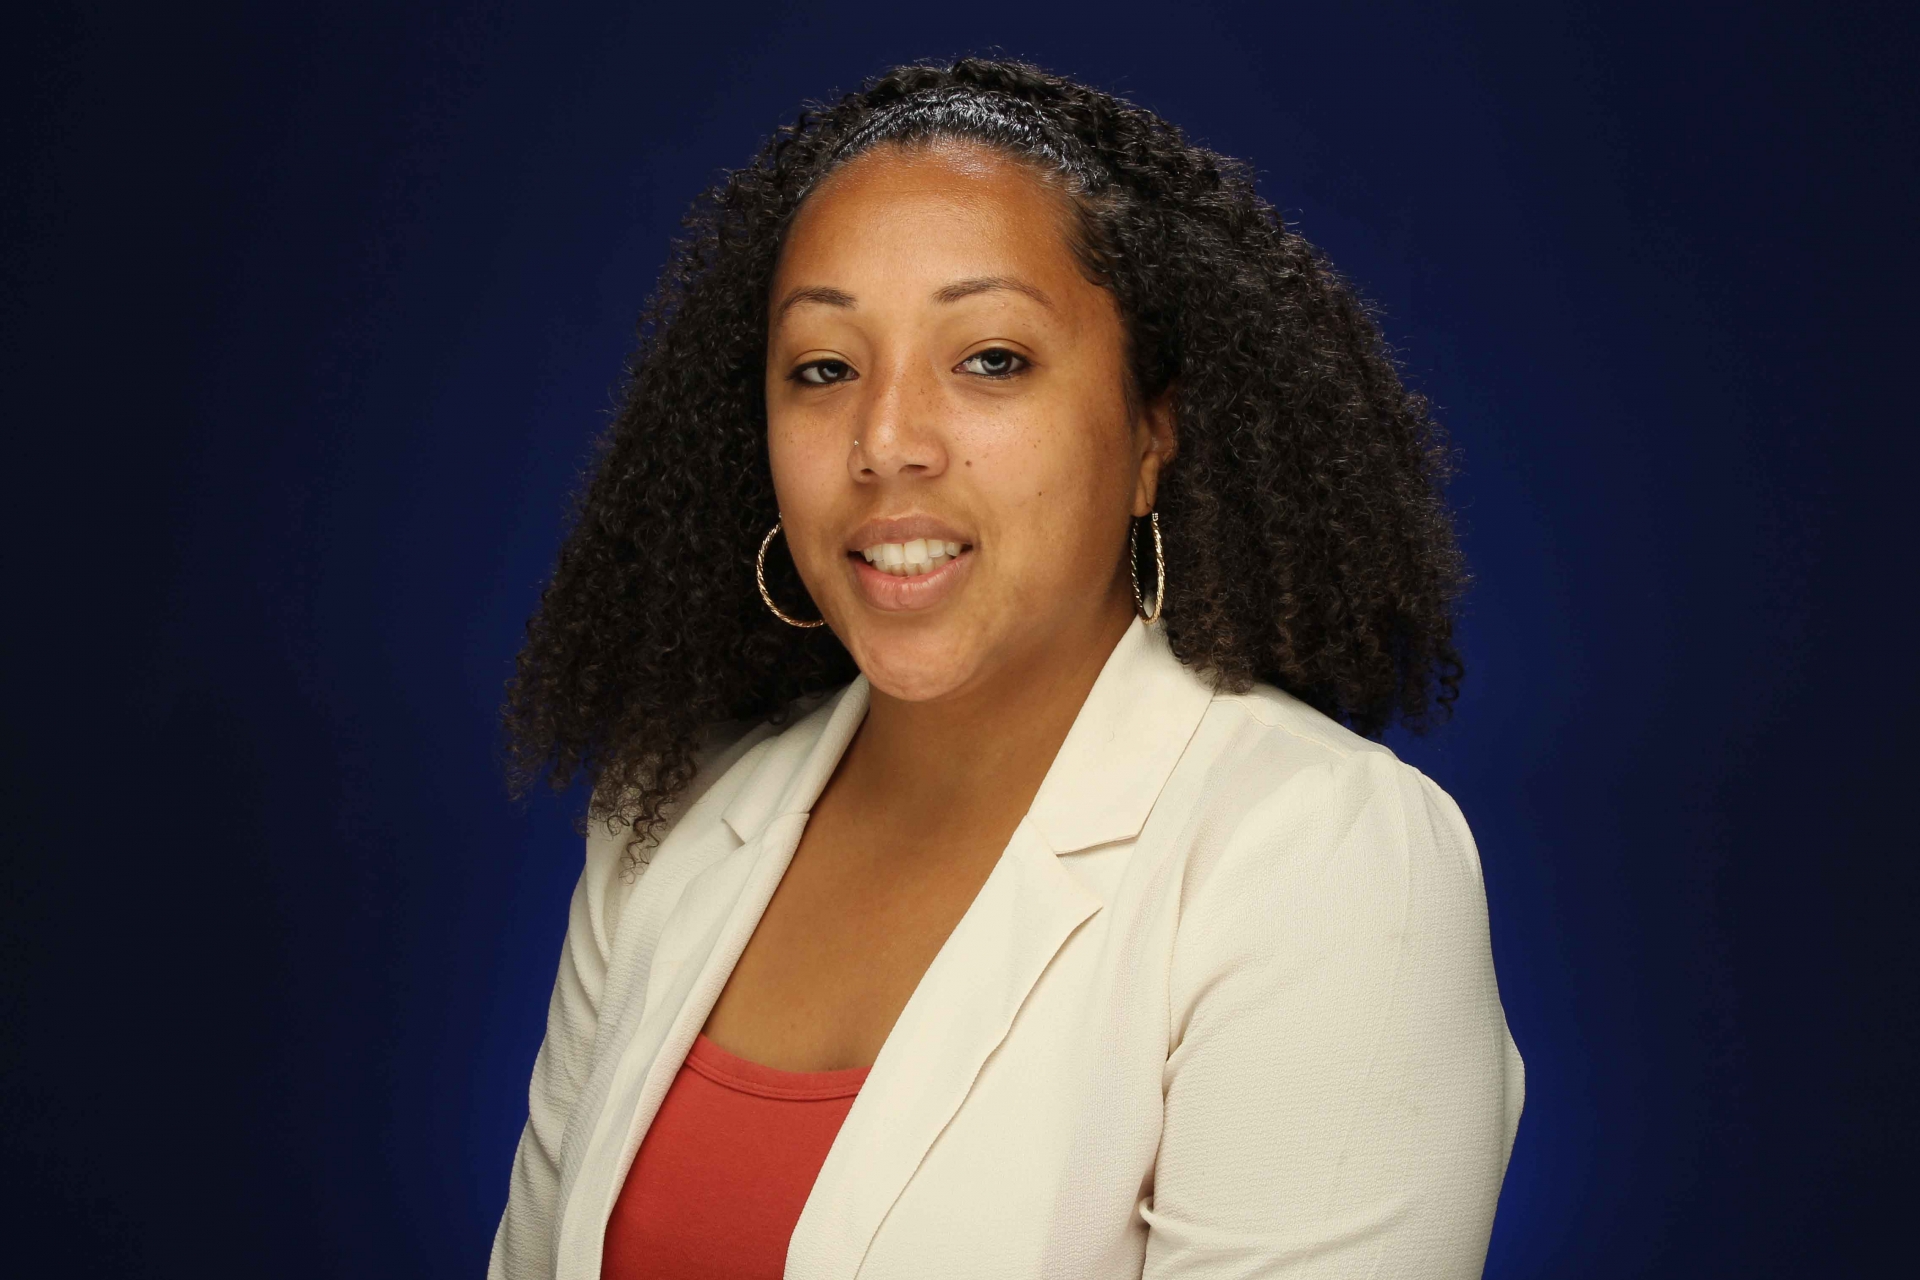 Breauna Hampton, STEM Counselor